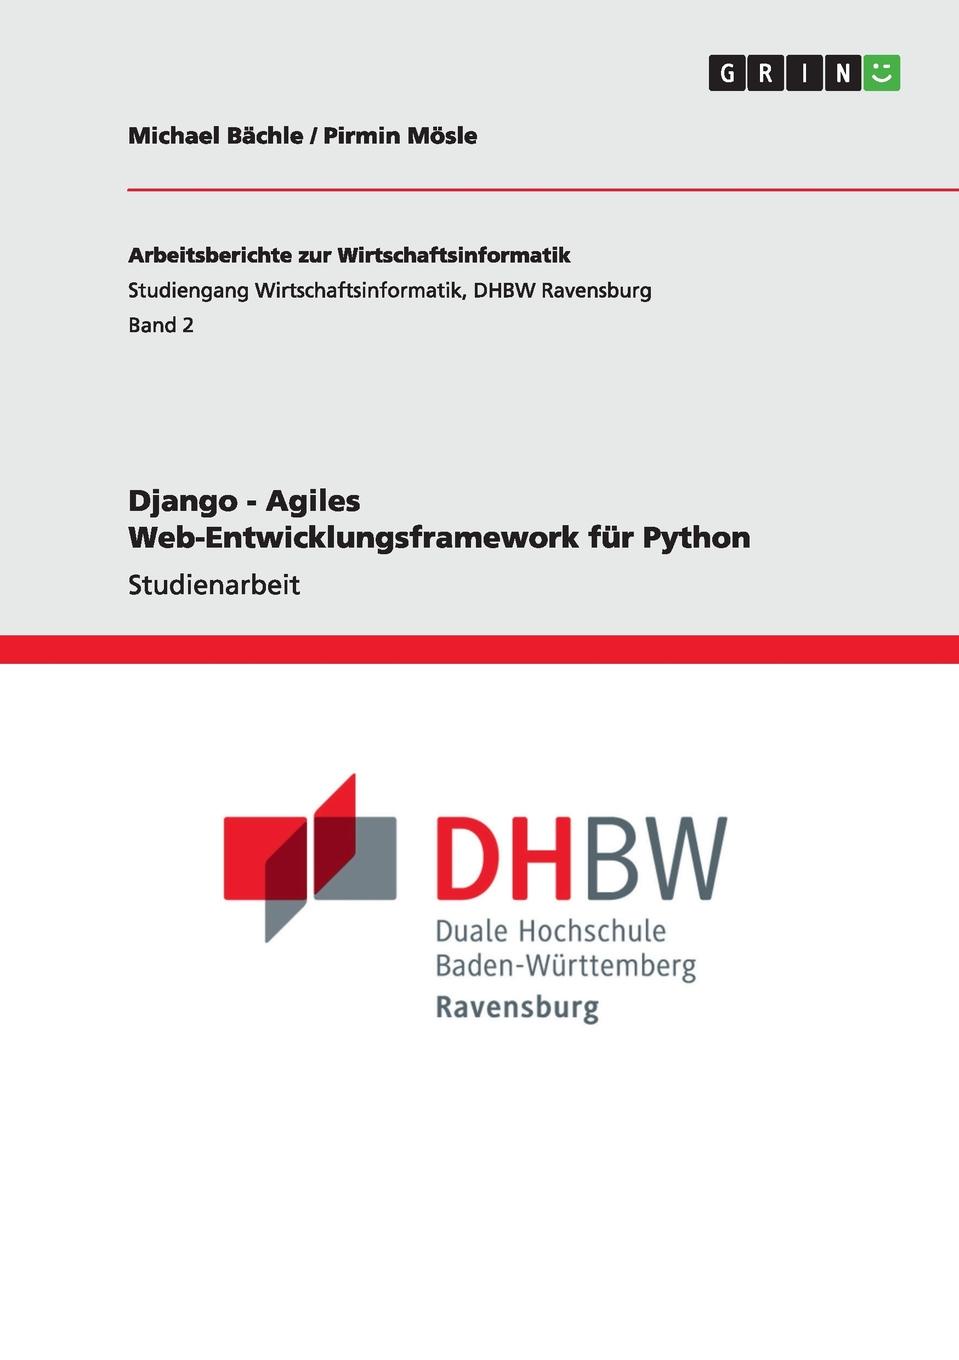 Django - Agiles Web-Entwicklungsframework fur Python